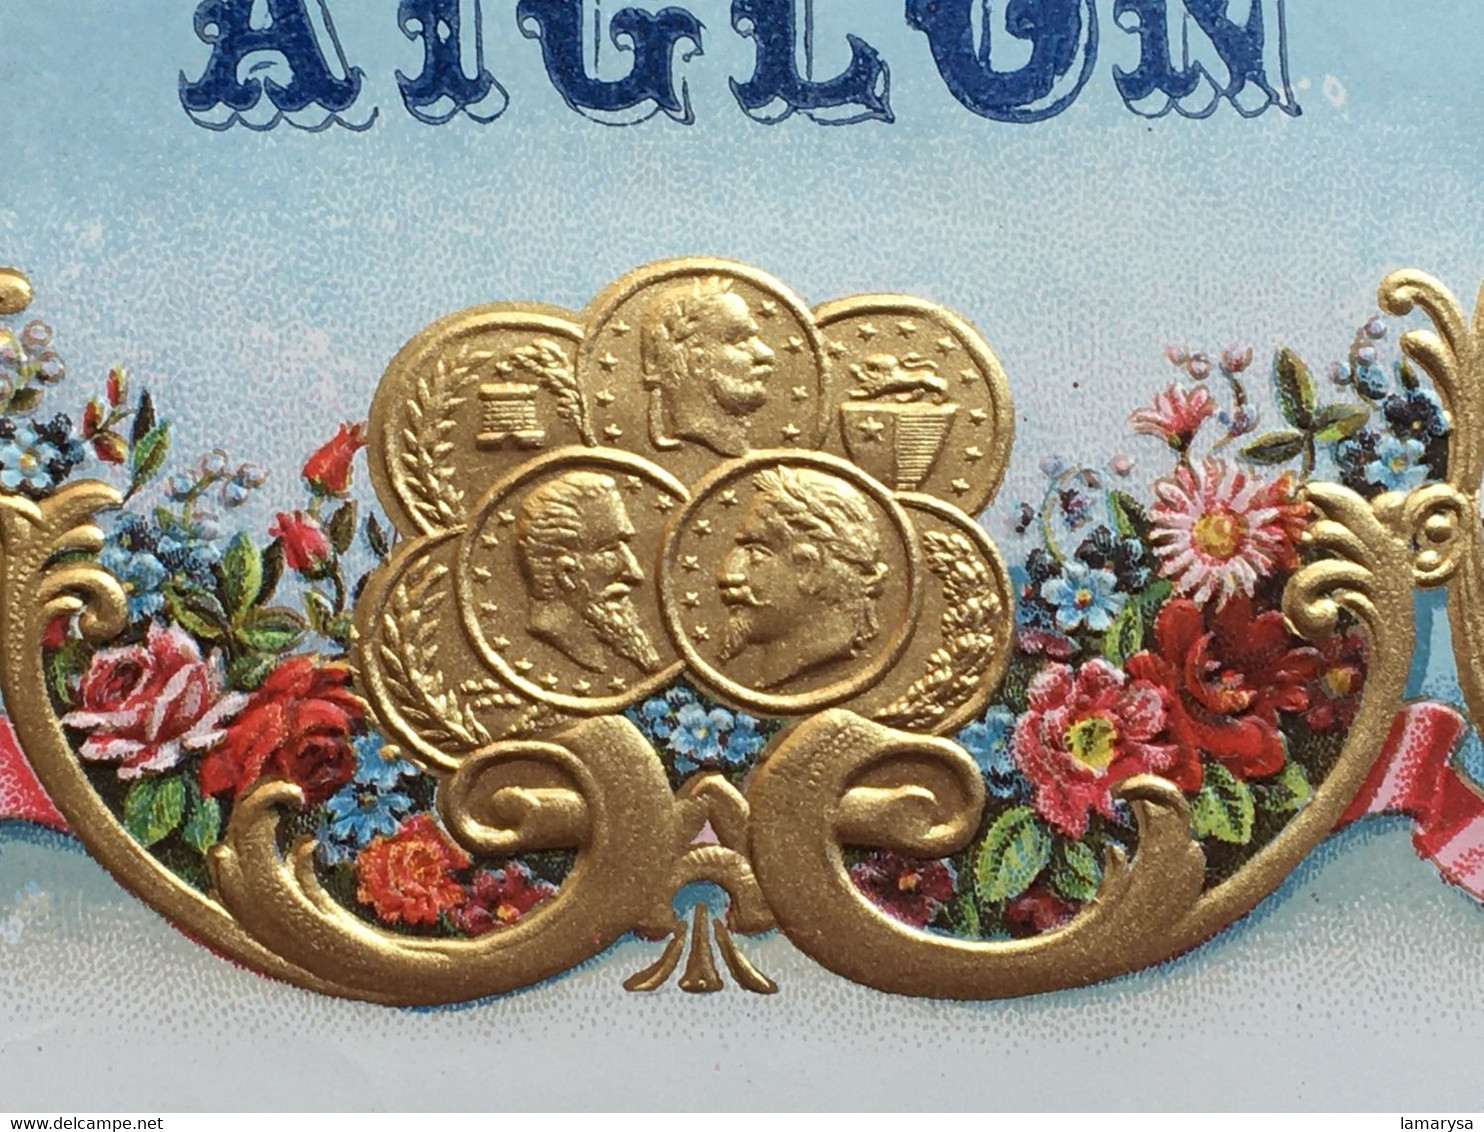 Vintage 1950-AIGLON Étiquette De Boîte De Chocolat Neuve-☛Chromo- Image Chocolat Aiglon-New Chocolate Box Label-☛Picture - Aiglon